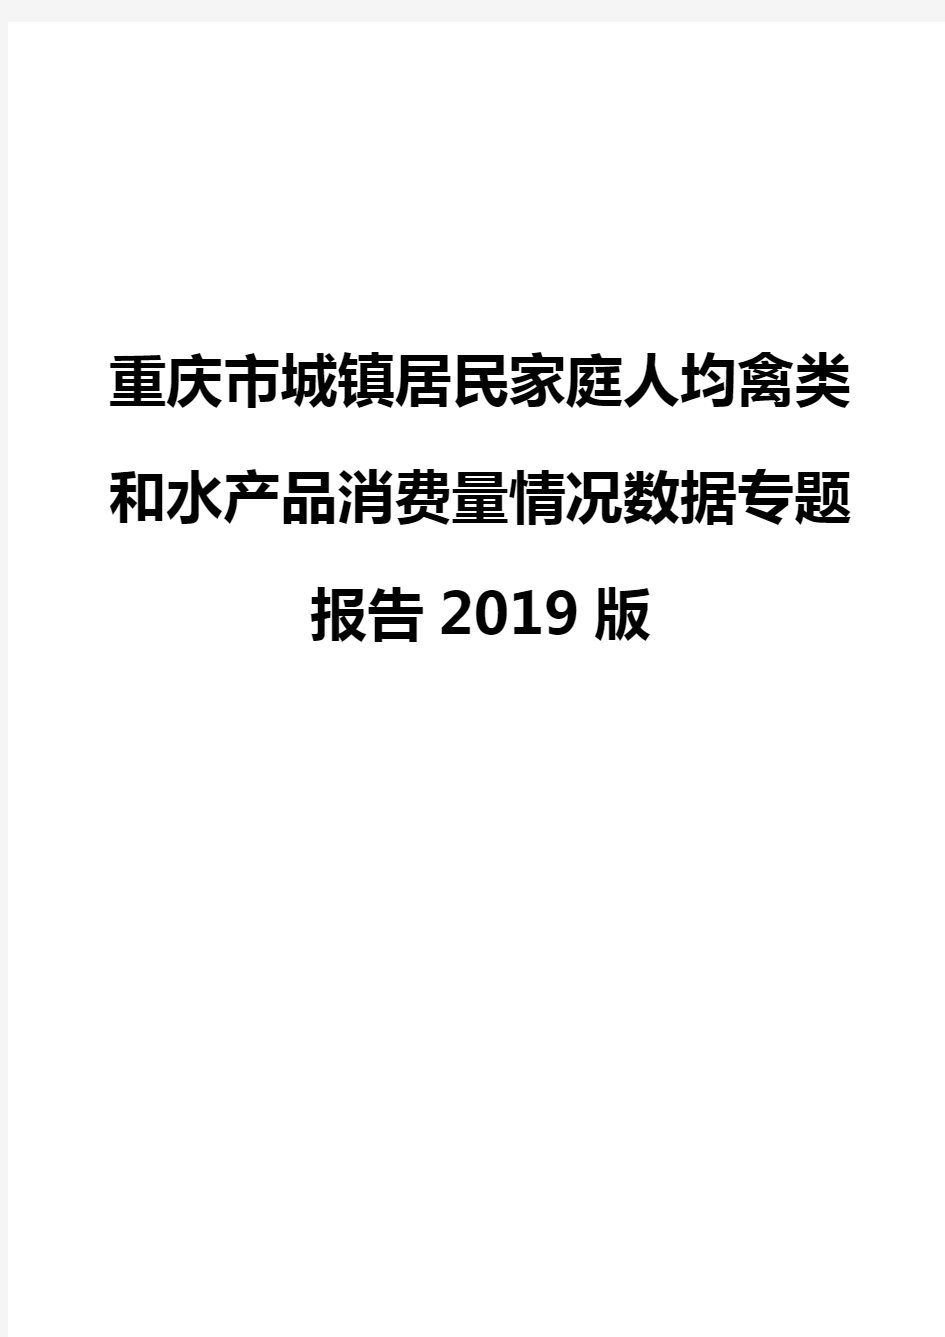 重庆市城镇居民家庭人均禽类和水产品消费量情况数据专题报告2019版